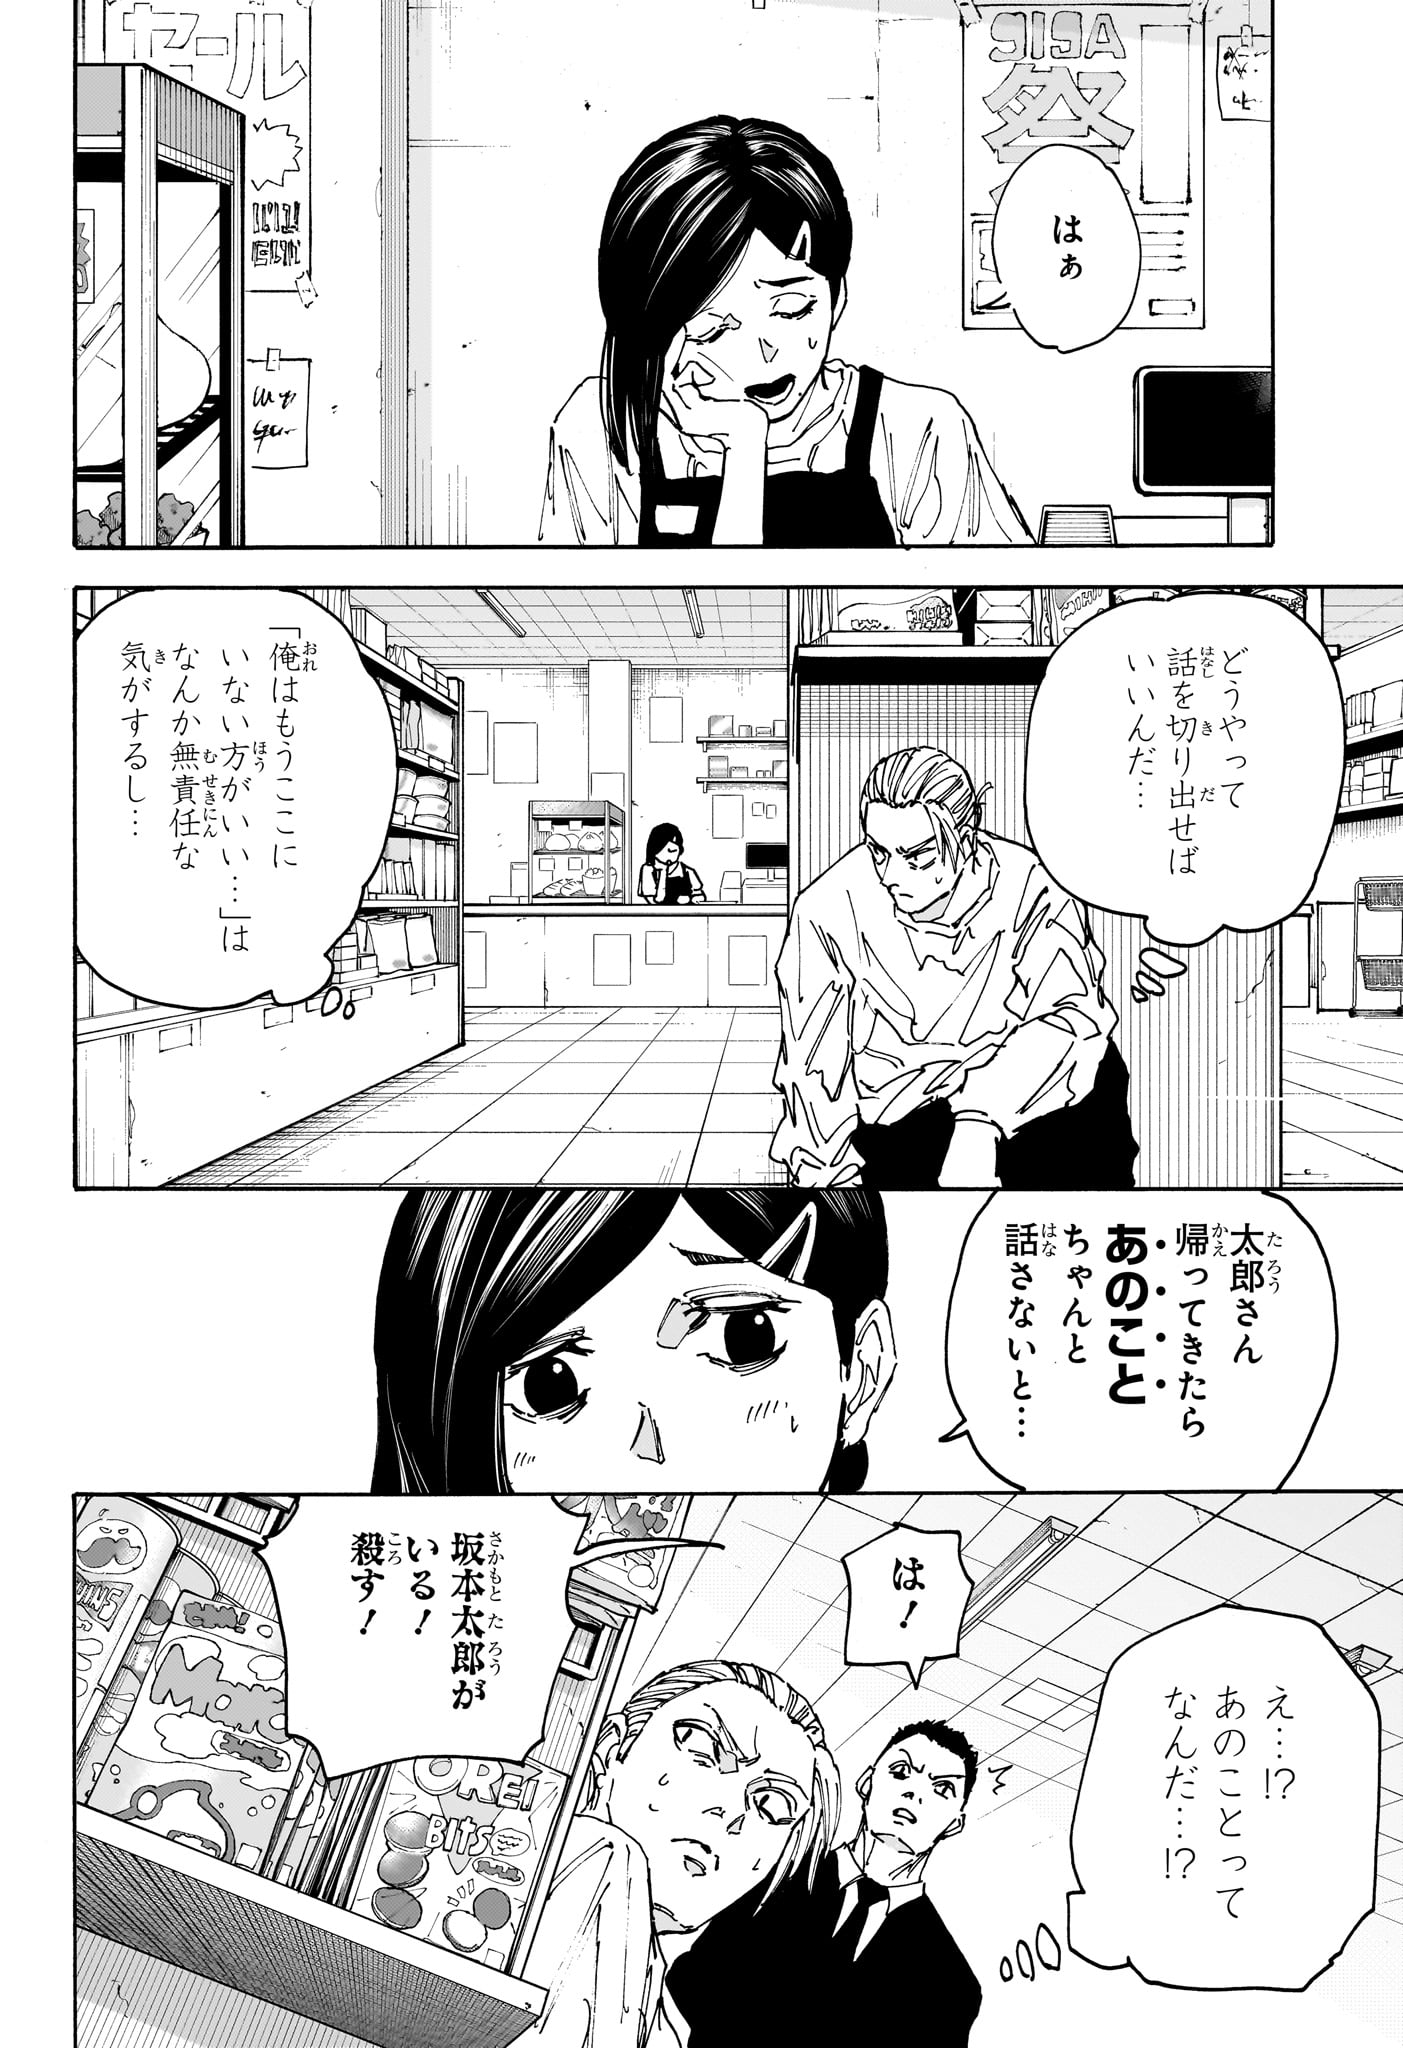 Sakamoto Days - Chapter 171 - Page 6